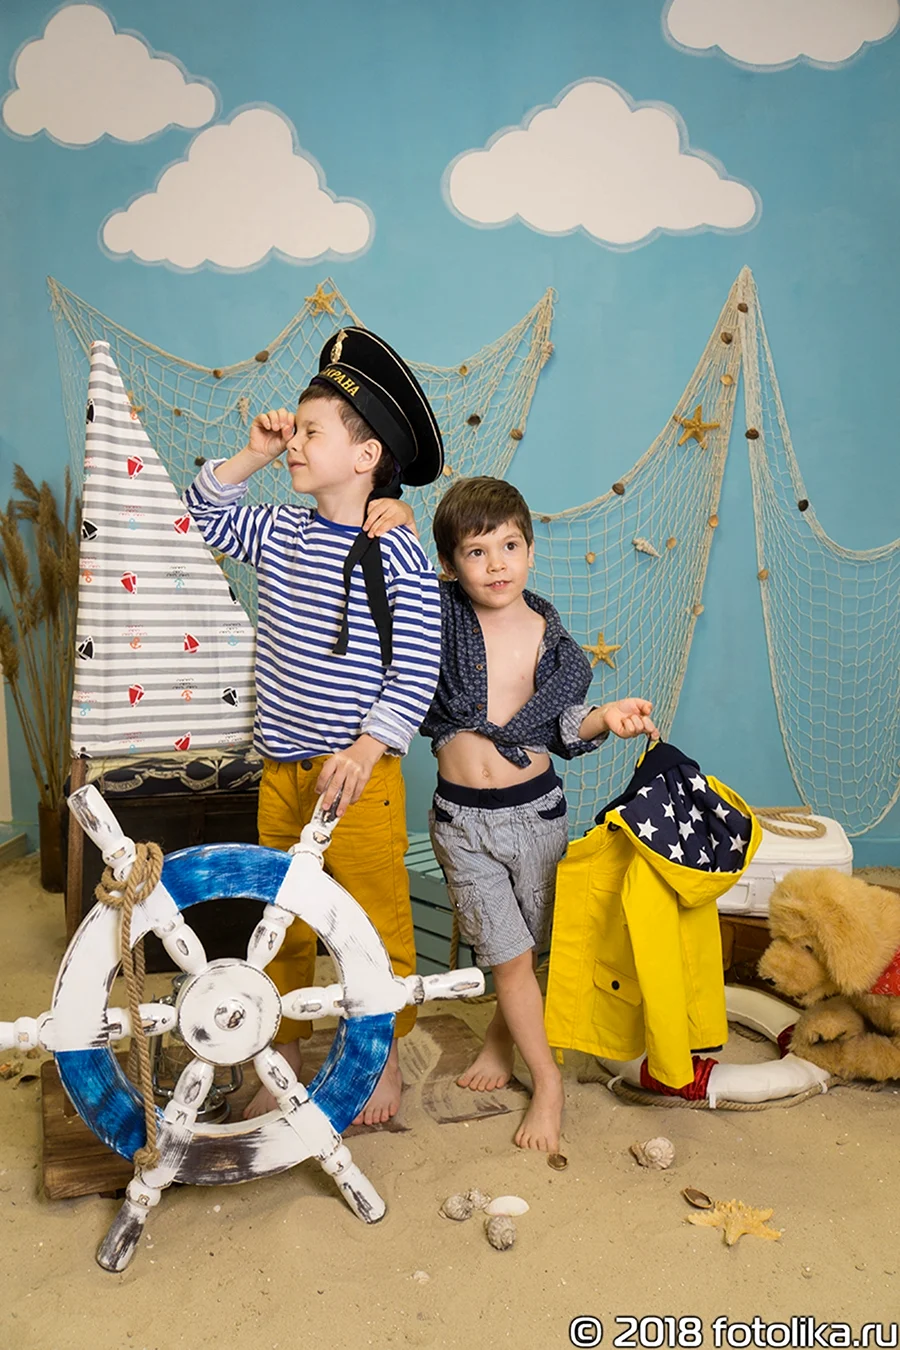 Фотосессия в морском стиле для детей